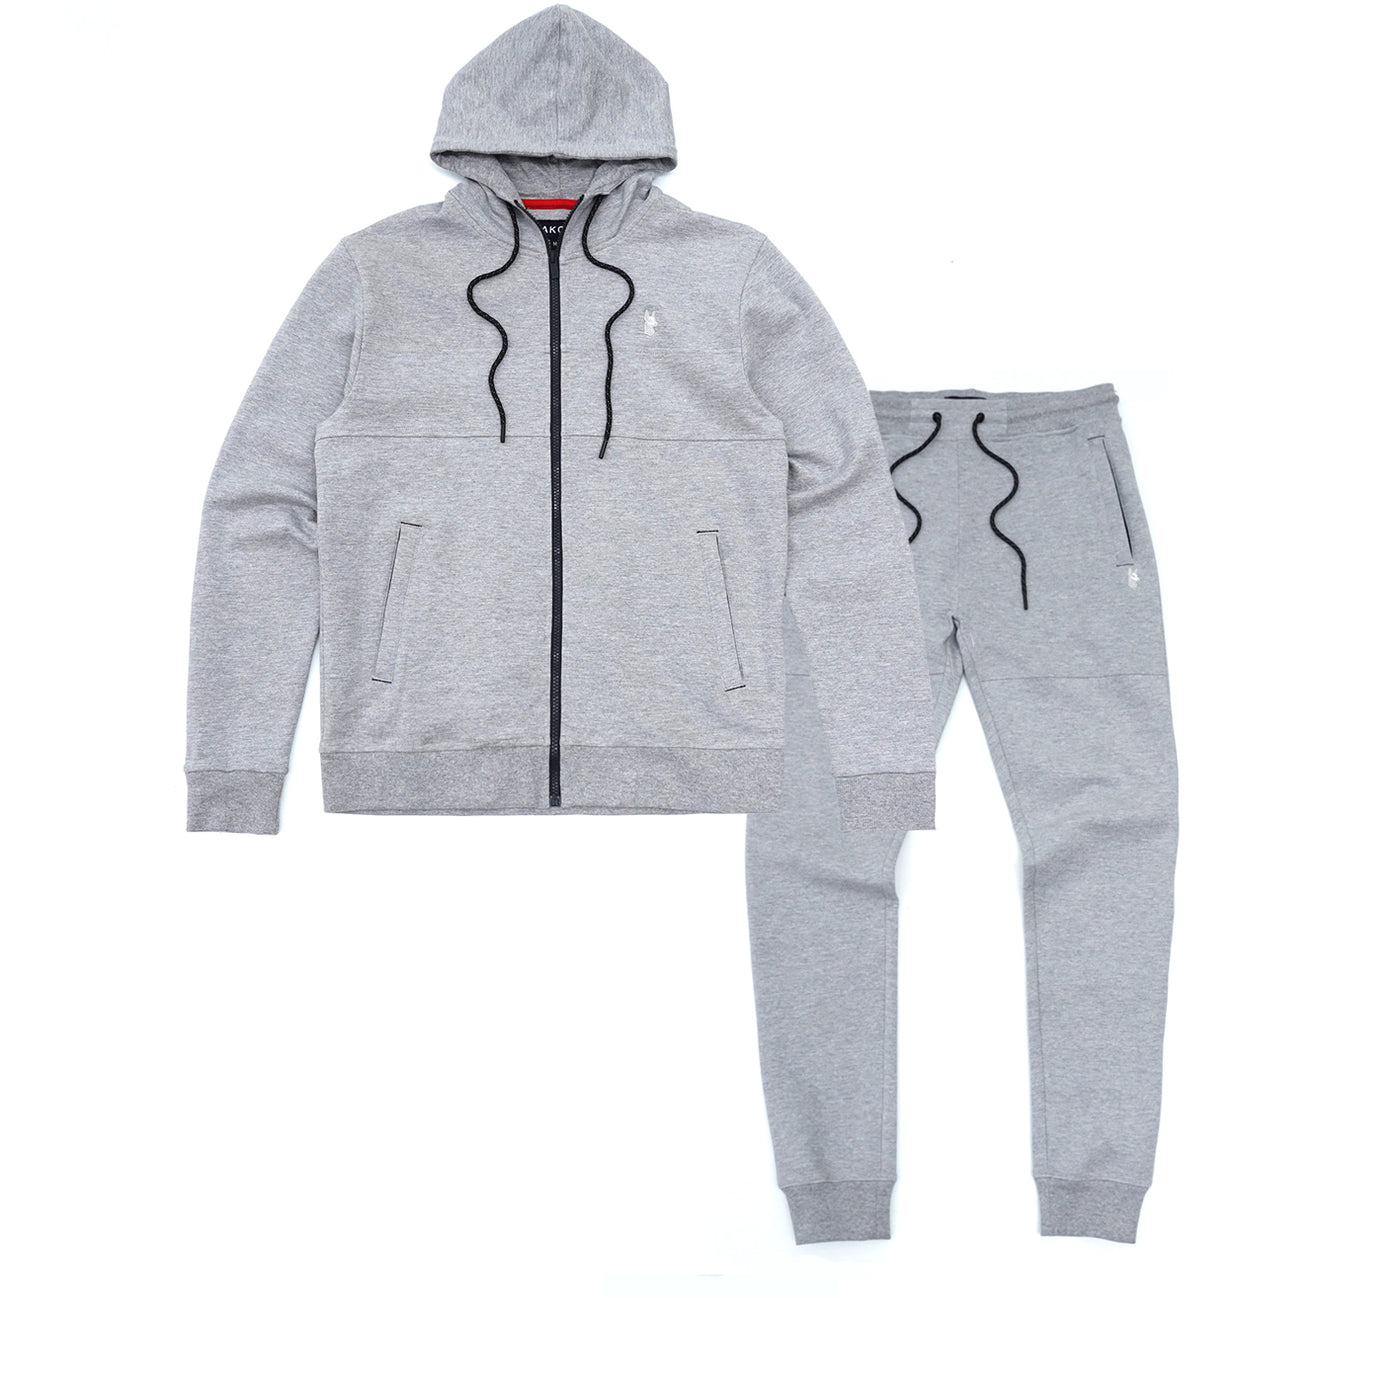 M3707 Tech Fleece Zip Up Hoodie Set - Gray